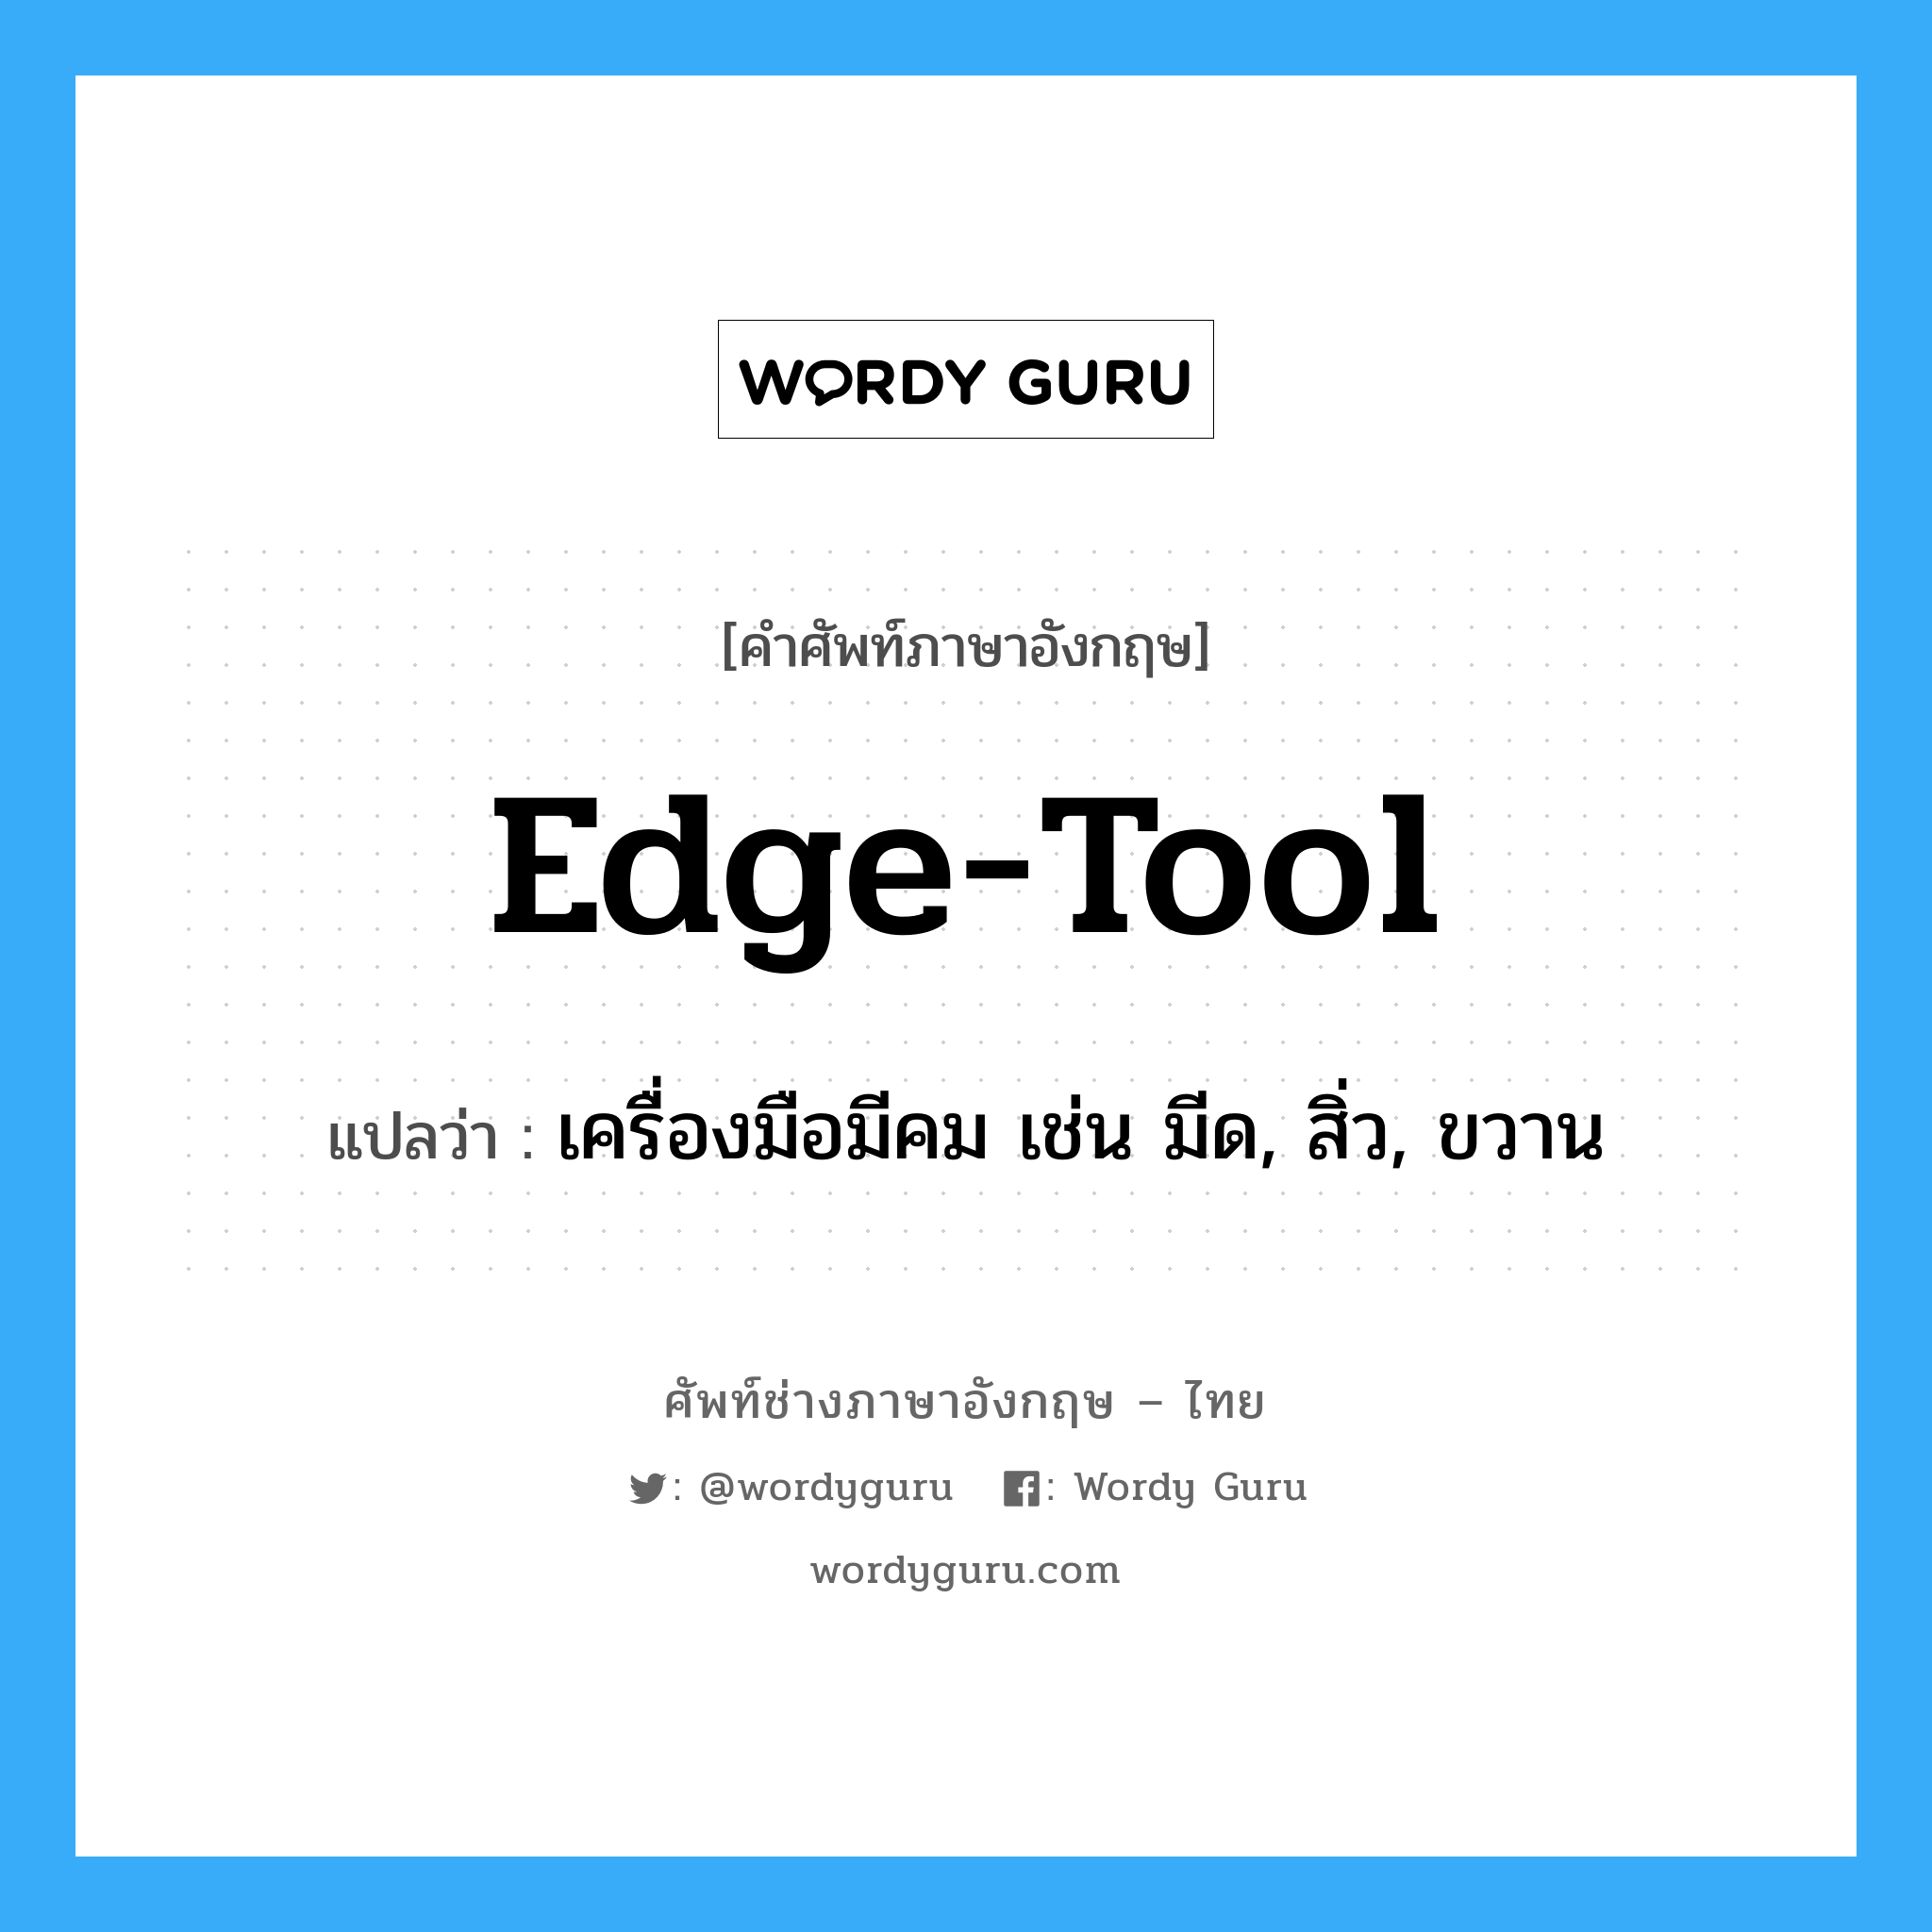 เครื่องมือมีคม เช่น มีด, สิ่ว, ขวาน ภาษาอังกฤษ?, คำศัพท์ช่างภาษาอังกฤษ - ไทย เครื่องมือมีคม เช่น มีด, สิ่ว, ขวาน คำศัพท์ภาษาอังกฤษ เครื่องมือมีคม เช่น มีด, สิ่ว, ขวาน แปลว่า edge-tool